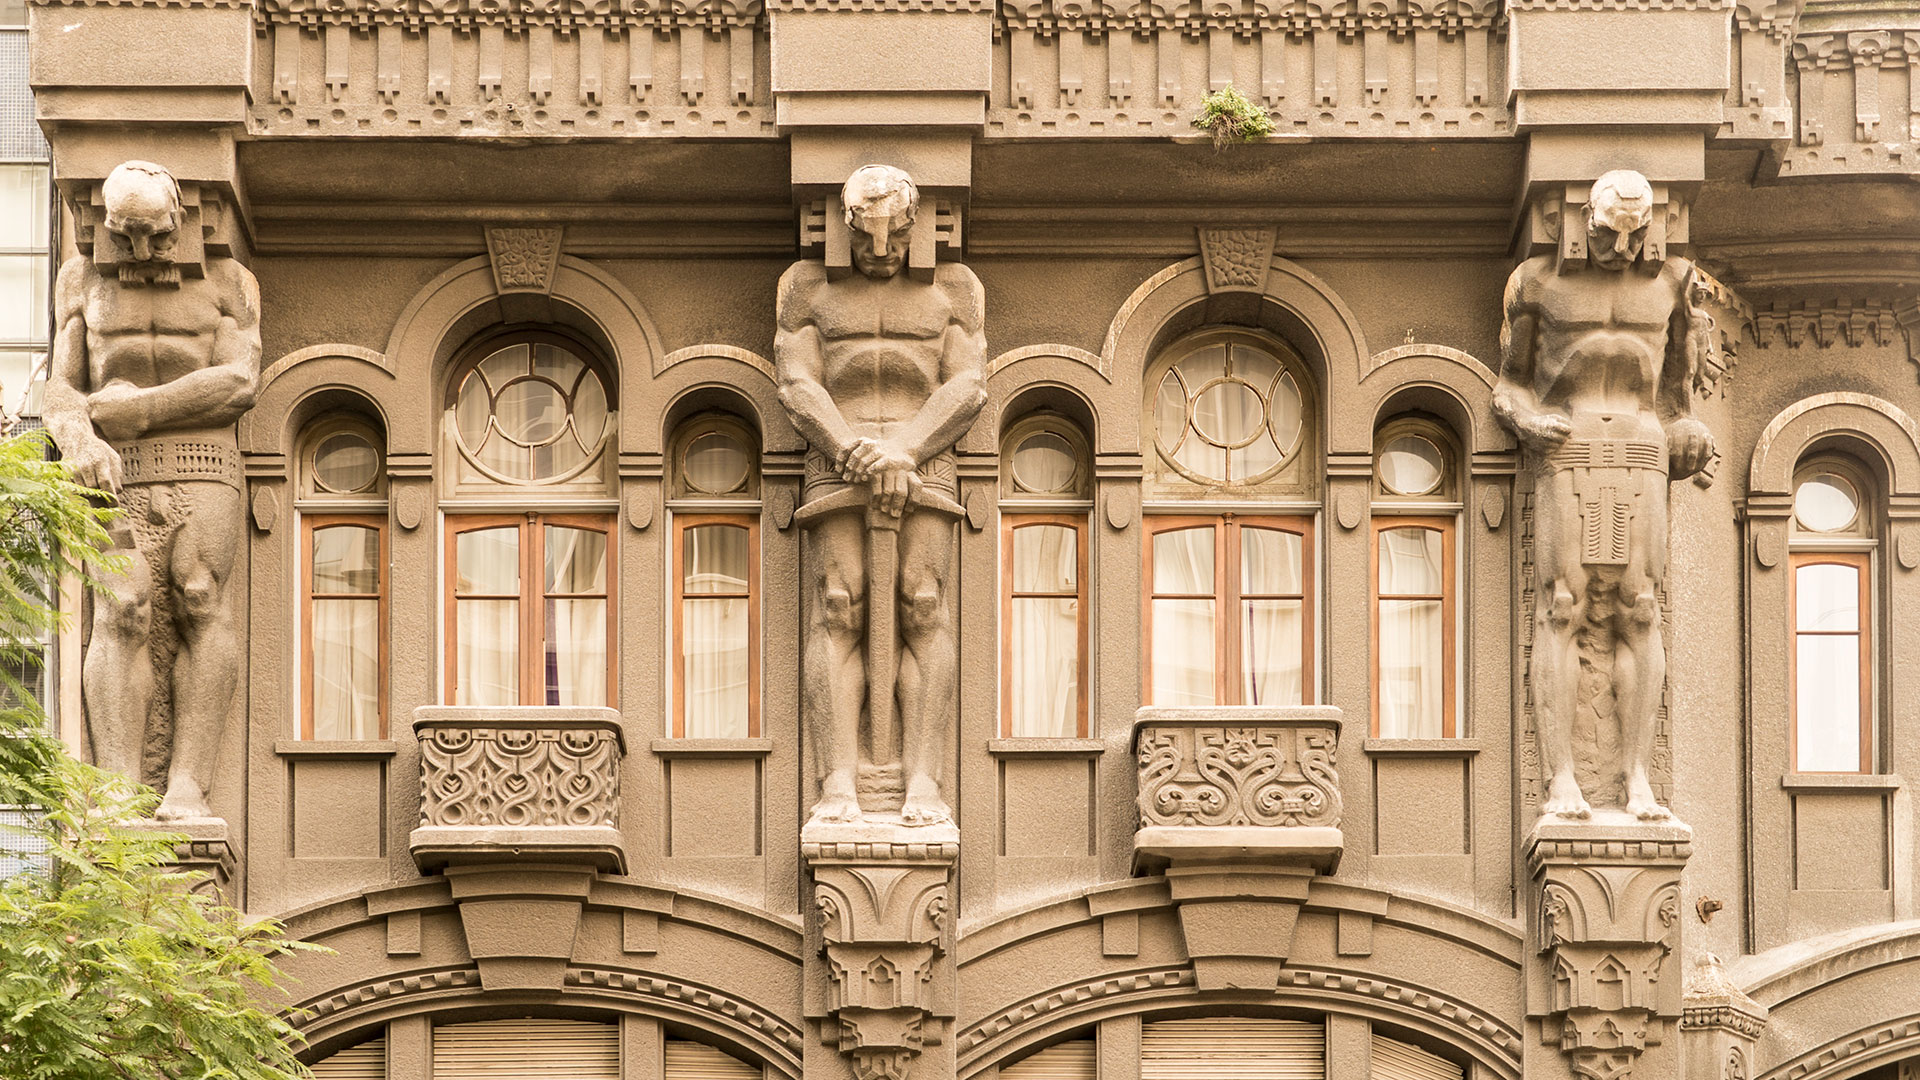 Distintas culturas y simbolismo son parte de la esencia de este inmueble protegido por la Ciudad de Buenos Aires (Foto Gentileza: Iván Buenosaires)